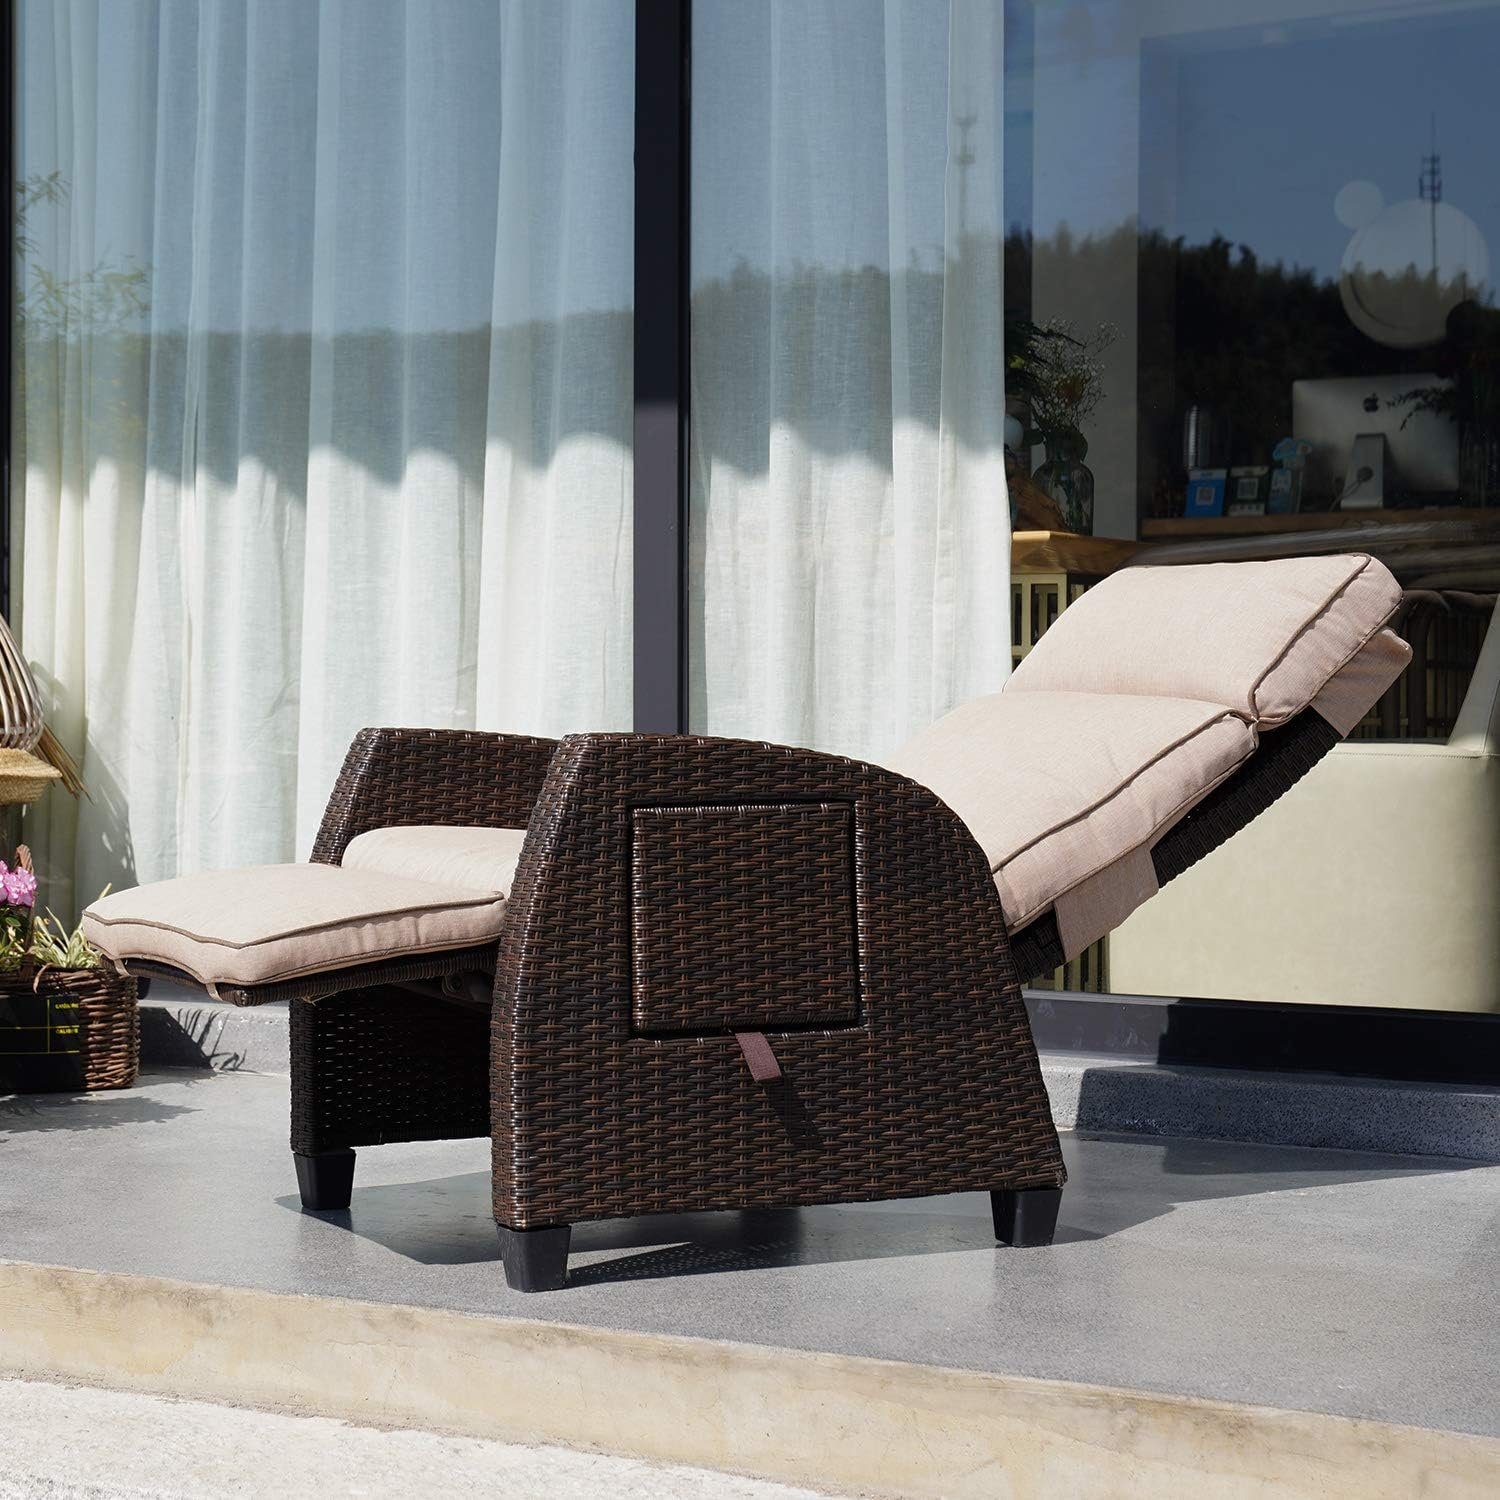 patio Sitzkissen, aus Grand 150 PE-Rattan, | Gartensessel Rückenlehne mit einstellbar mit Dunkelbraun Grad Beistelltisch, Beige